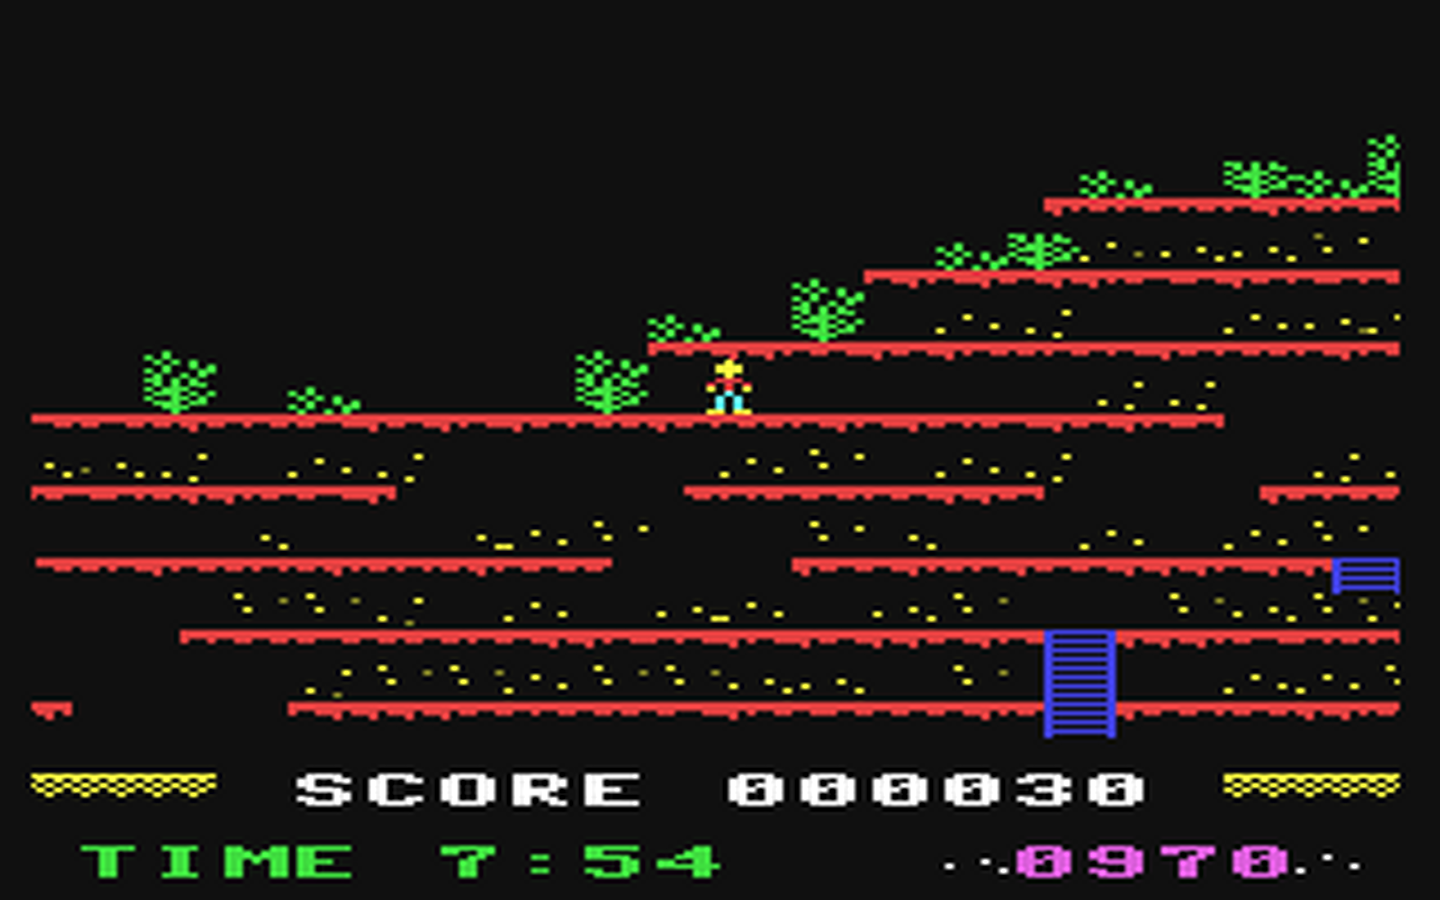 C64 GameBase Mountain_King Beyond 1983